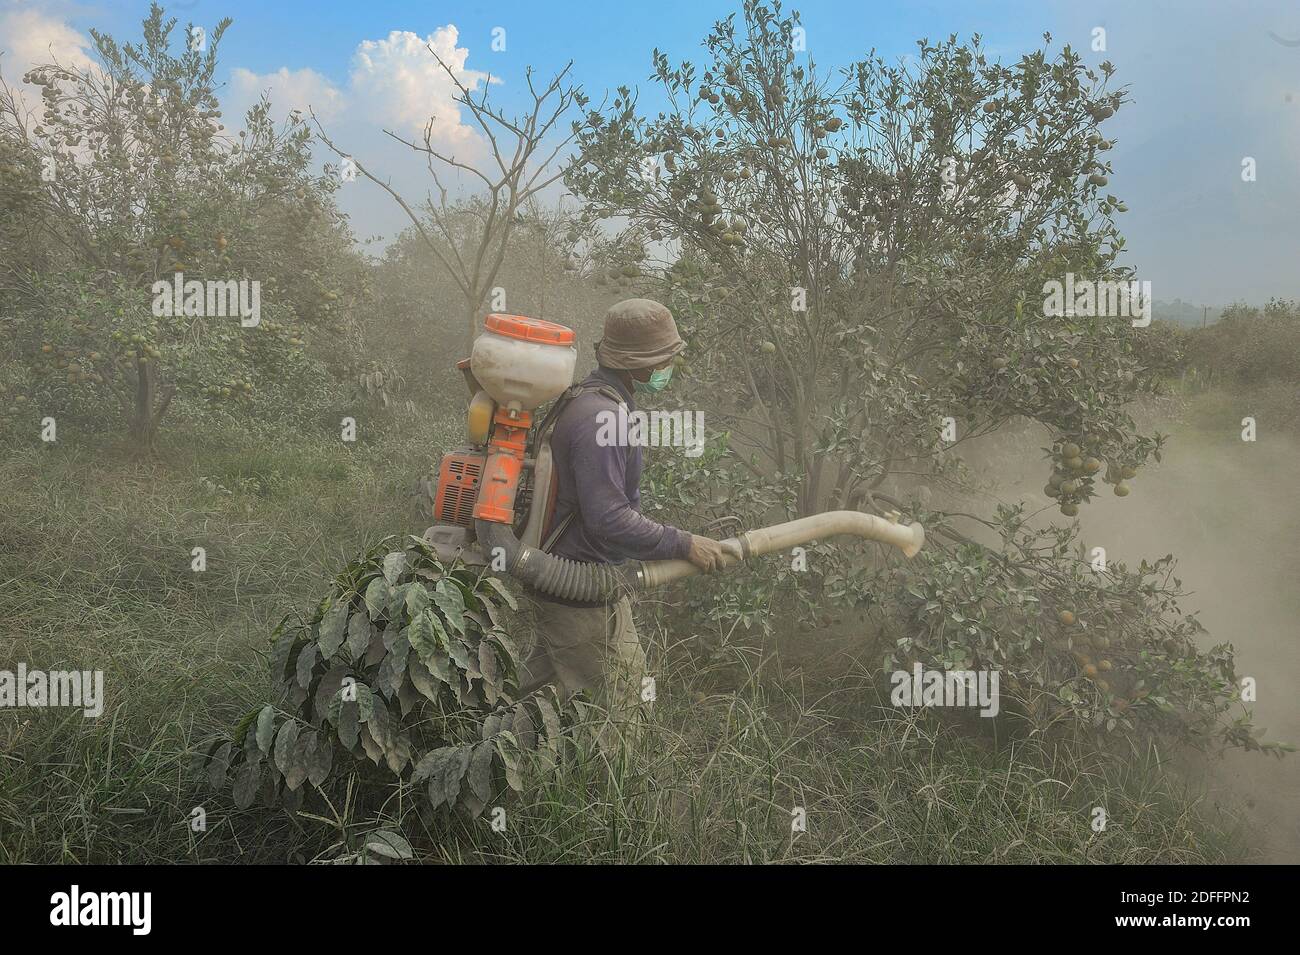 Giardiniere, S Tarigan ha visto sparare la sua piantagione di arancia che è stata colpita da cenere vulcanica dall'eruzione del vulcano Sinabung al villaggio di Sukambelin nel distretto di Namanteran, distretto di Karo, Sumatra nord, Indonesia il 20 agosto 2020. I prodotti degli agricoltori hanno registrato un calo dei prezzi del 40% rispetto al prezzo normale a seguito dell'eruzione. Foto di Aditya Sutanta/ABACAPRESS.COM Foto Stock